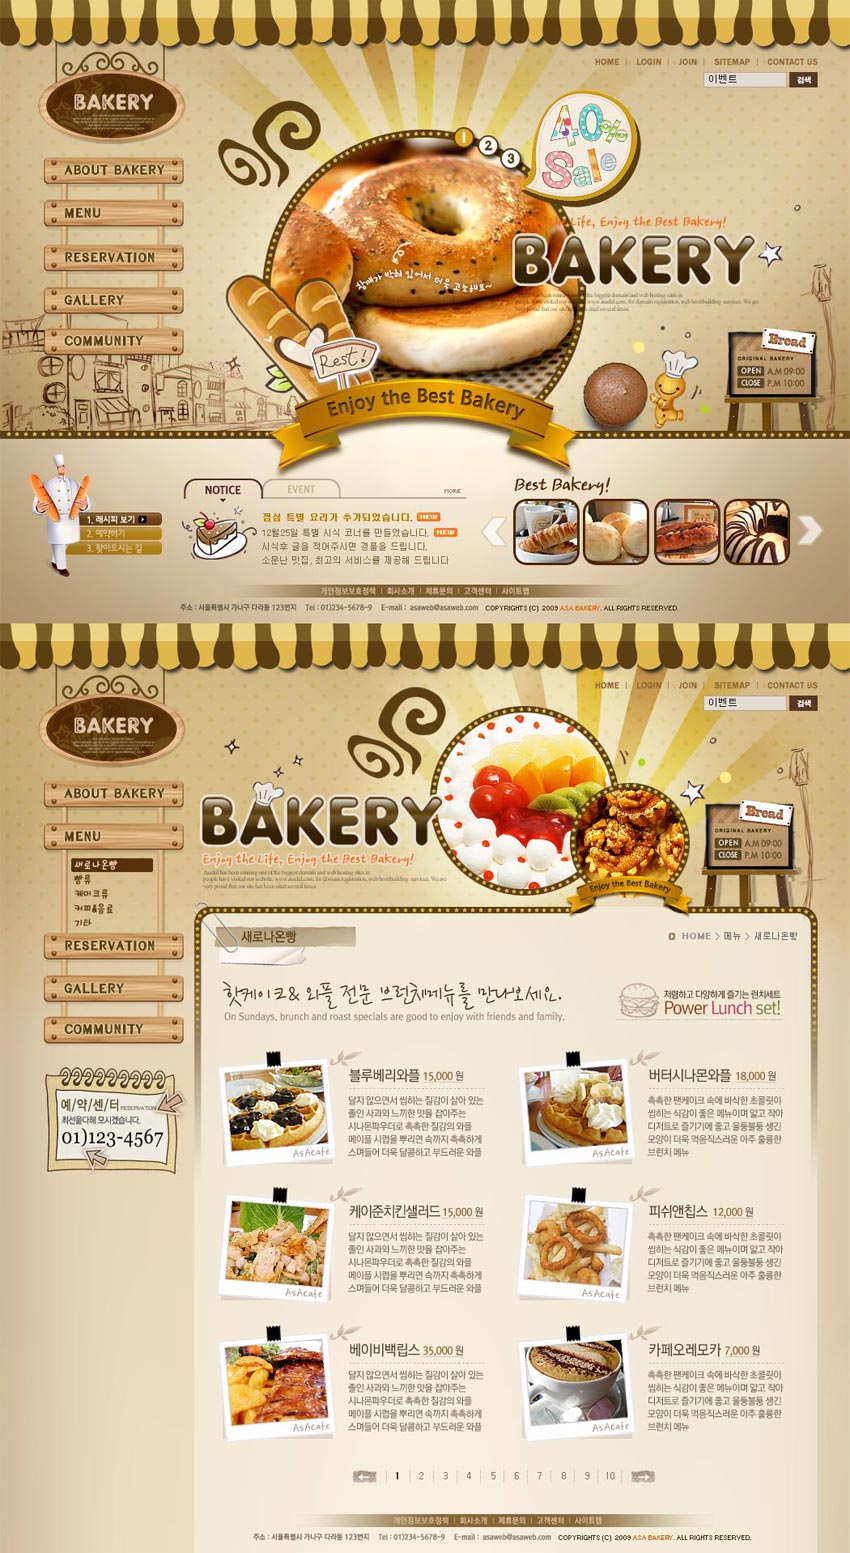 可爱的韩国网页面包店网站模板psd分层素材下载